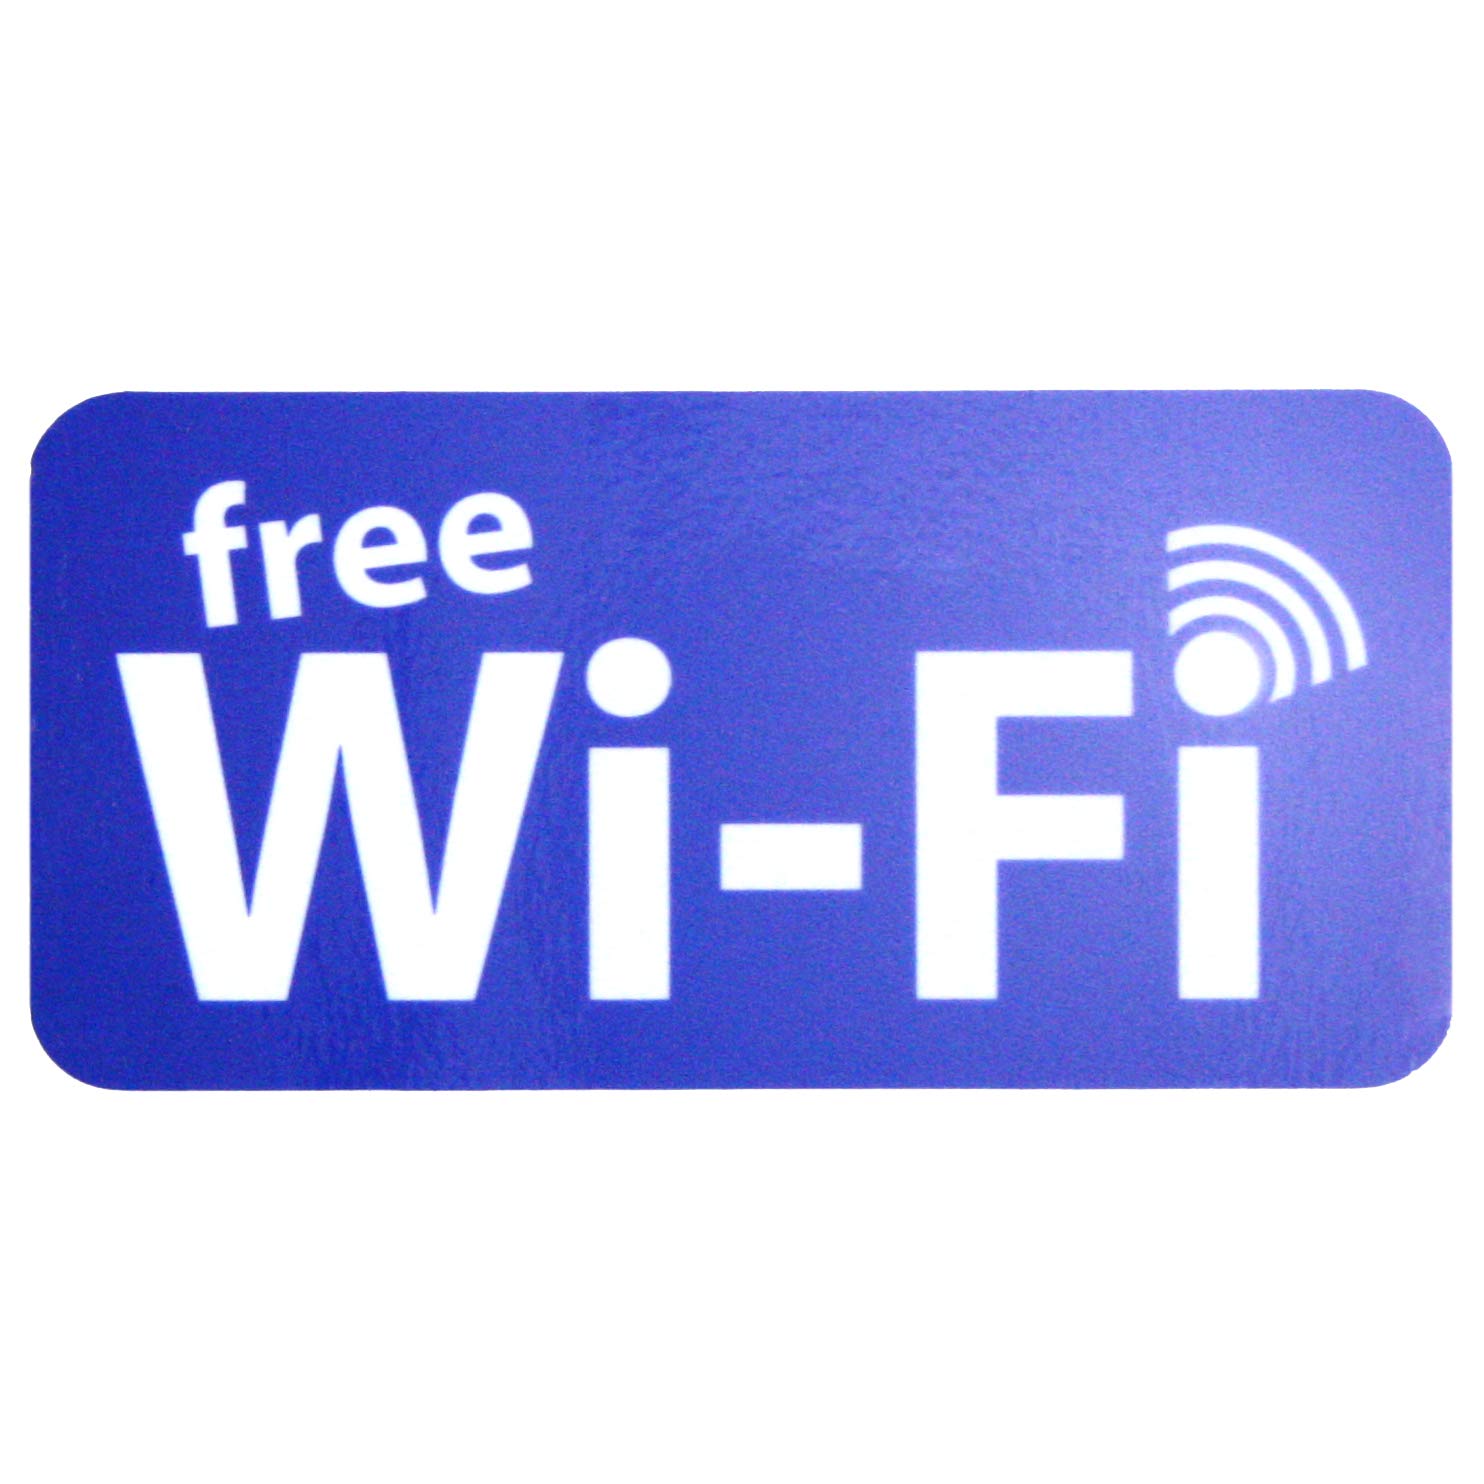 easydruck24de Aufkleber 'Free Wi-Fi' | hin_267 | iSecur®, Für Ihre Bäckerei, Ihr Café, Restaurant oder Geschäft | Free WiFi | kostenloses WiFi | kostenfreies WiFi | Hinweis von easydruck24de